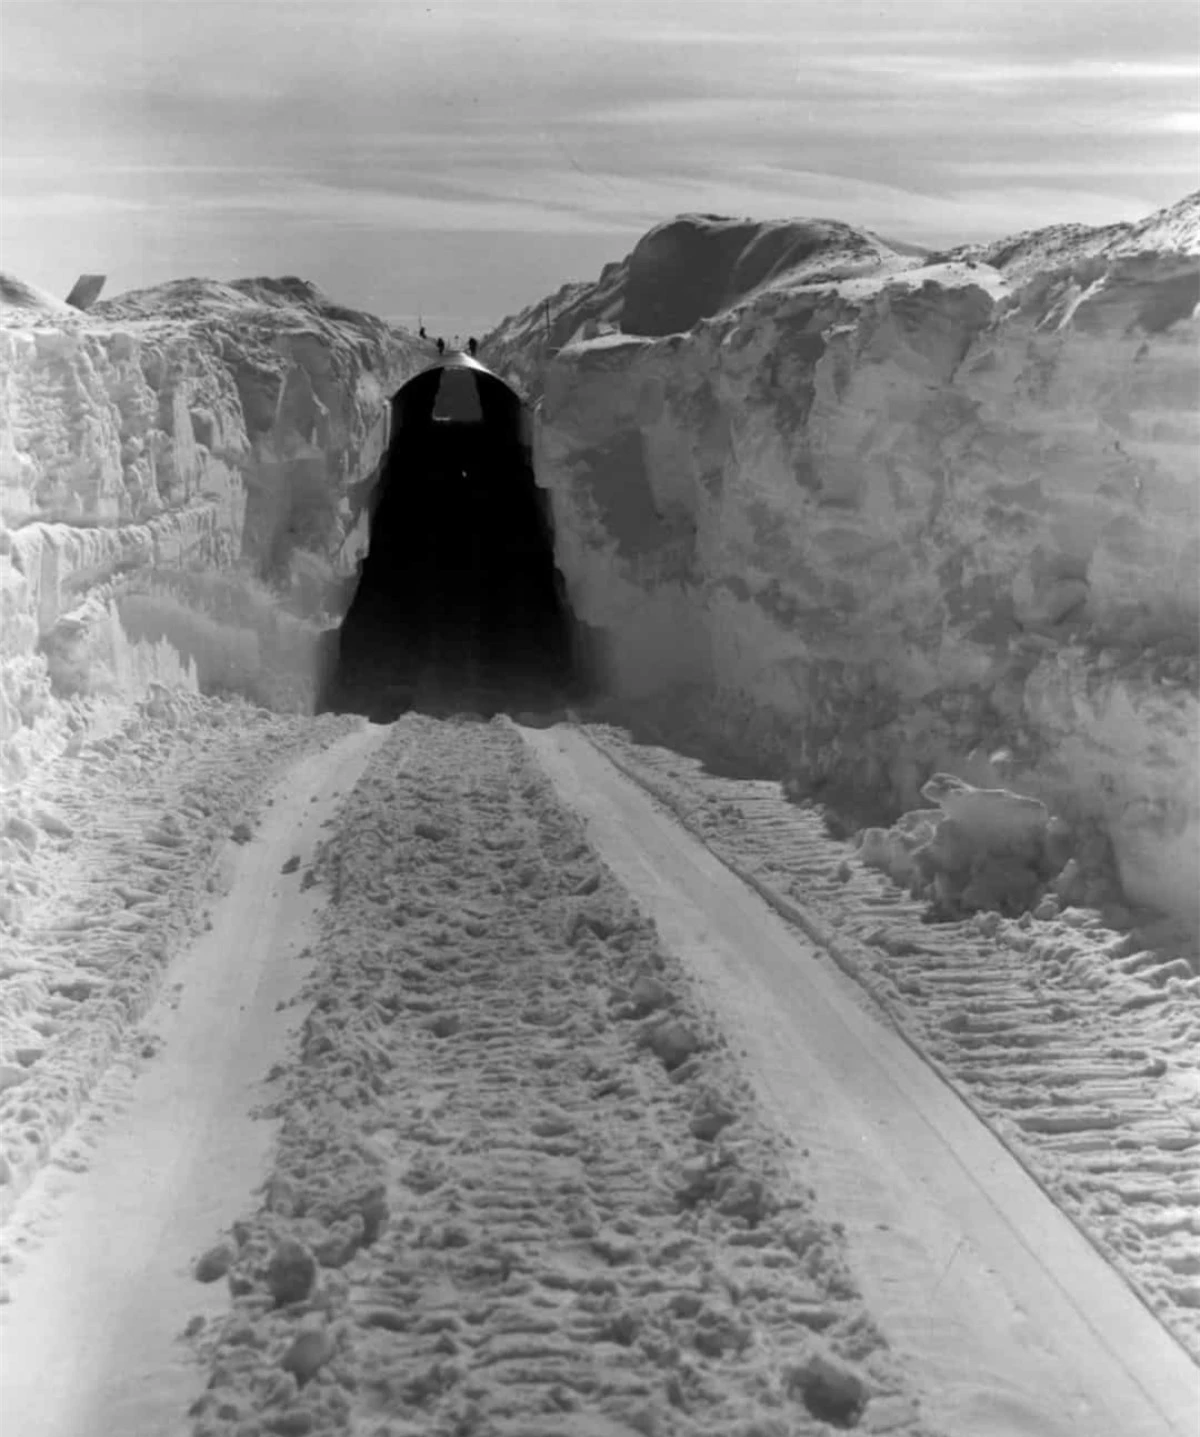 Dự án Iceworm là một điều kỳ diệu về kỹ thuật nhưng sự dịch chuyển của các khối băng đã làm gián đoạn sự thống nhất của cấu trúc khiến cho địa điểm này không phải một nơi an toàn bảo vệ các vũ khí hạt nhân. Dự án đã dừng lại vào năm 1966.